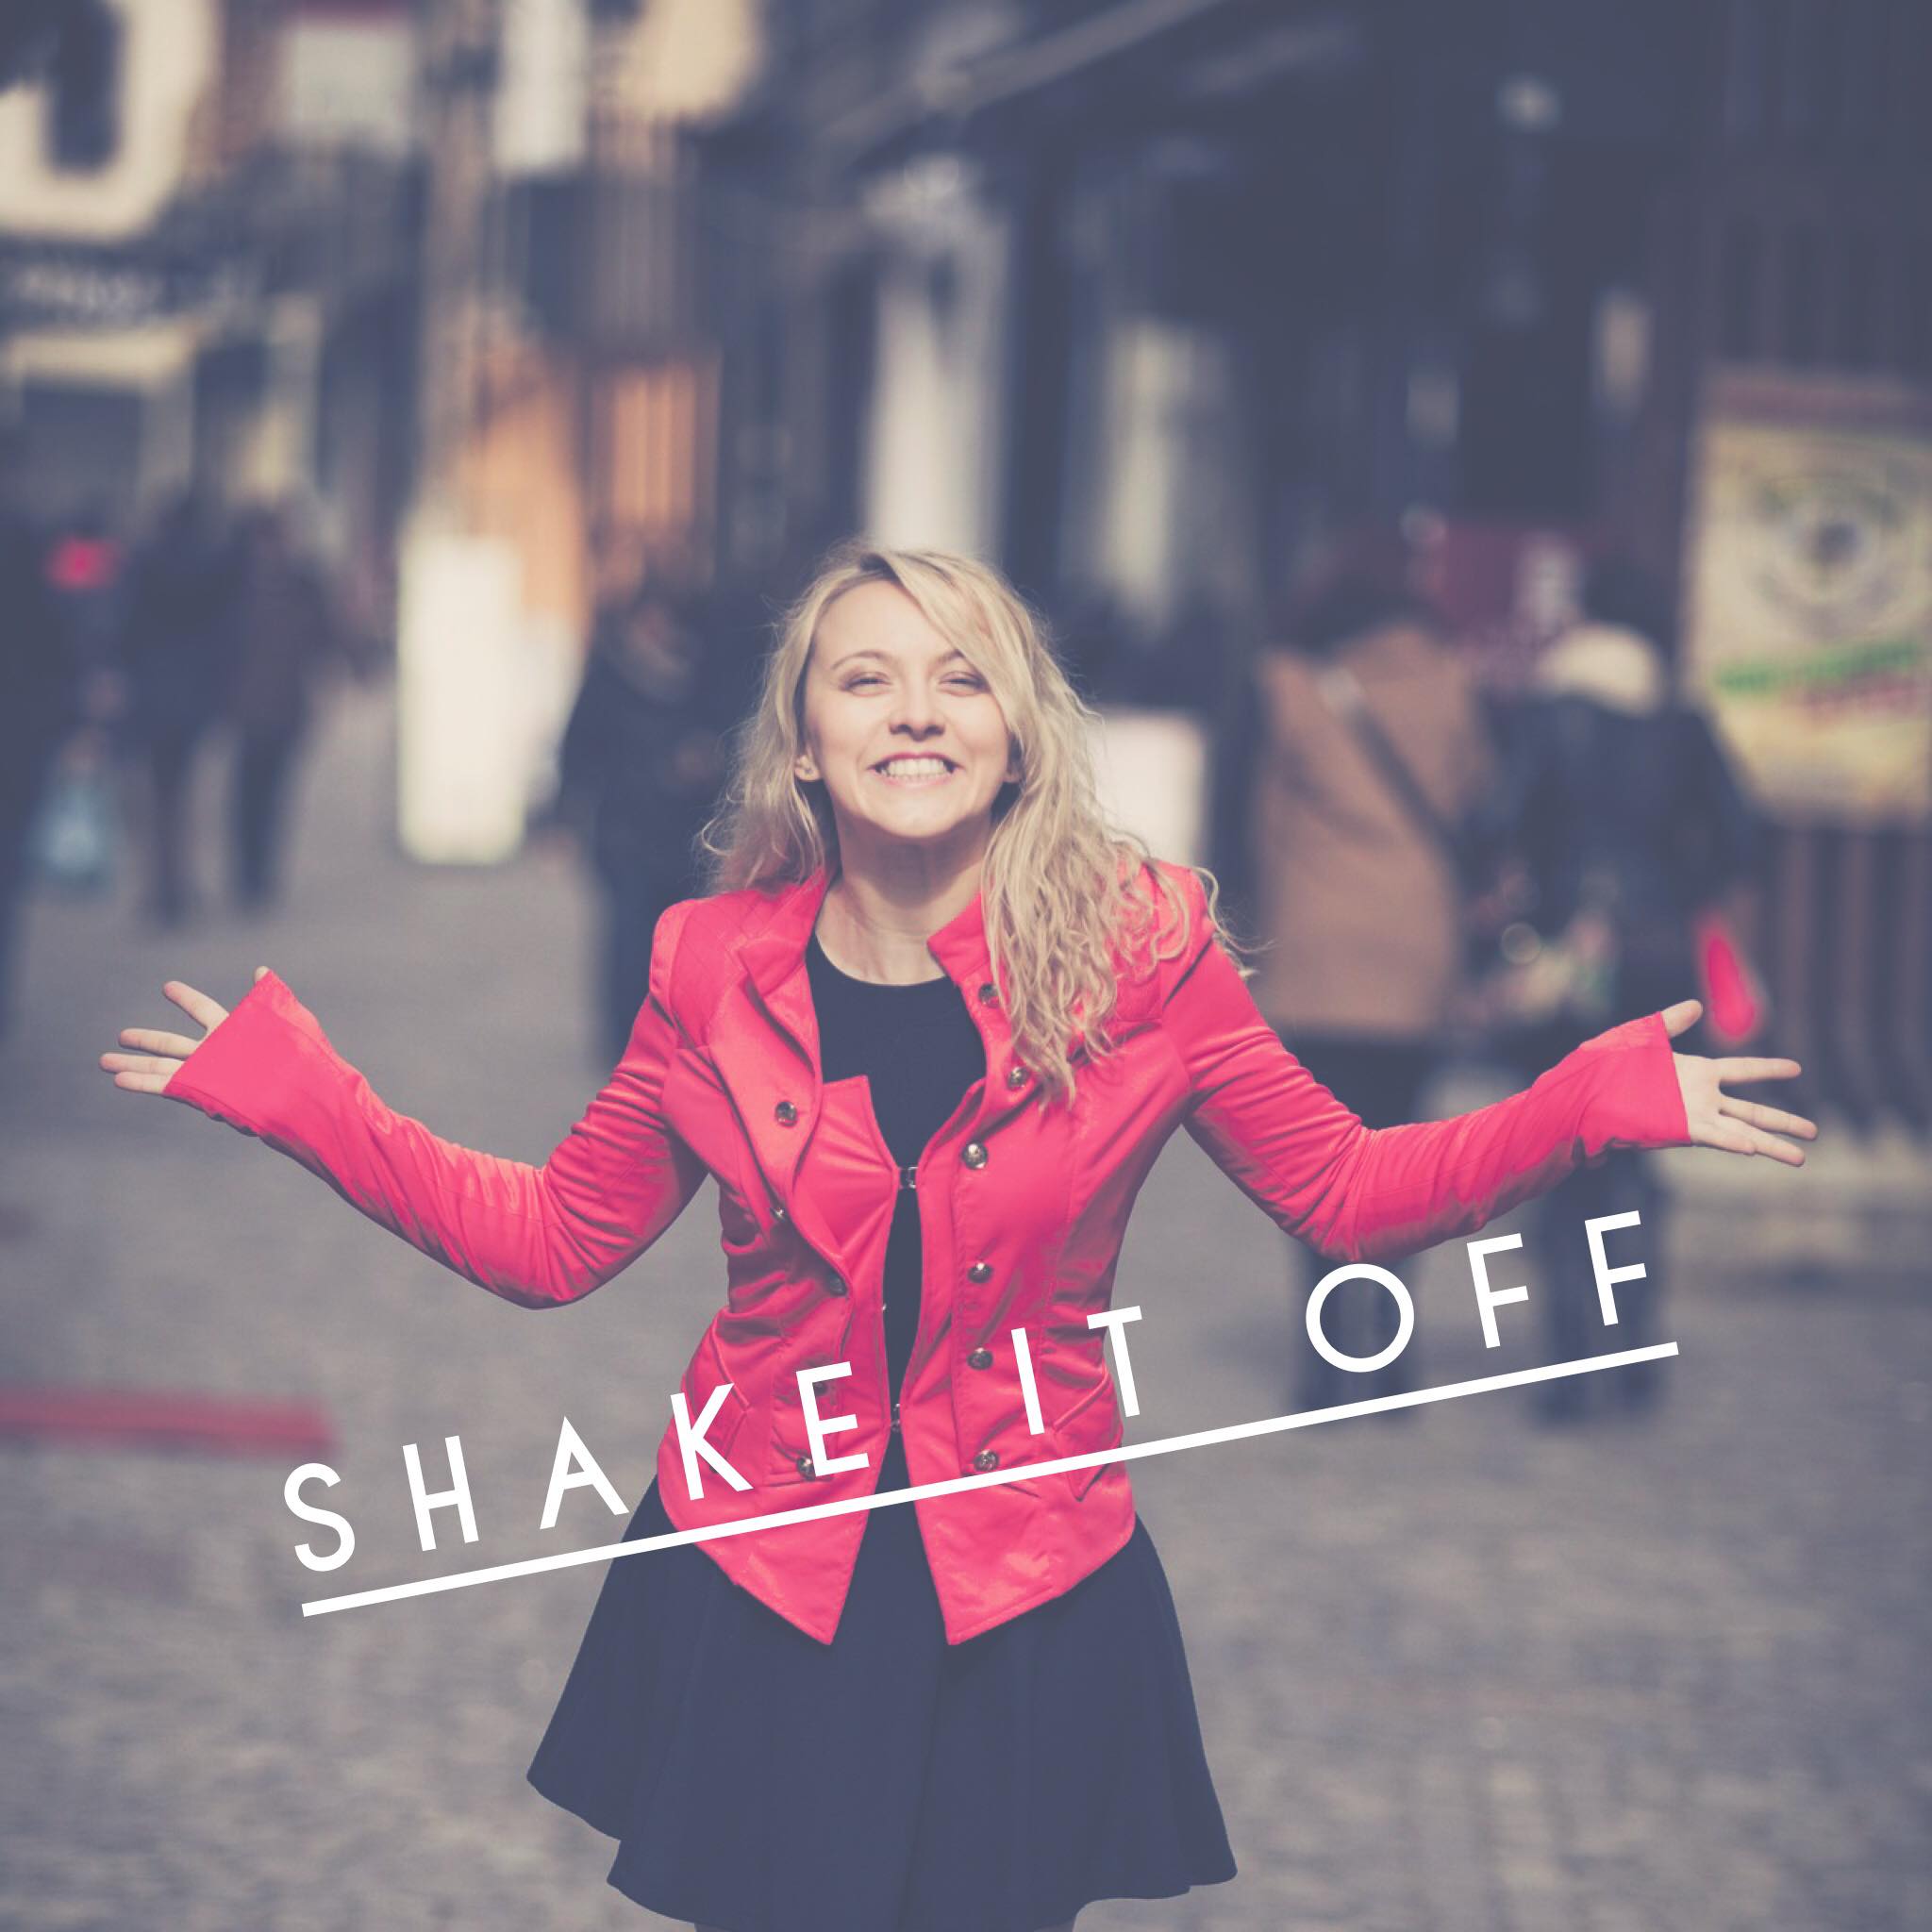 Shake It off